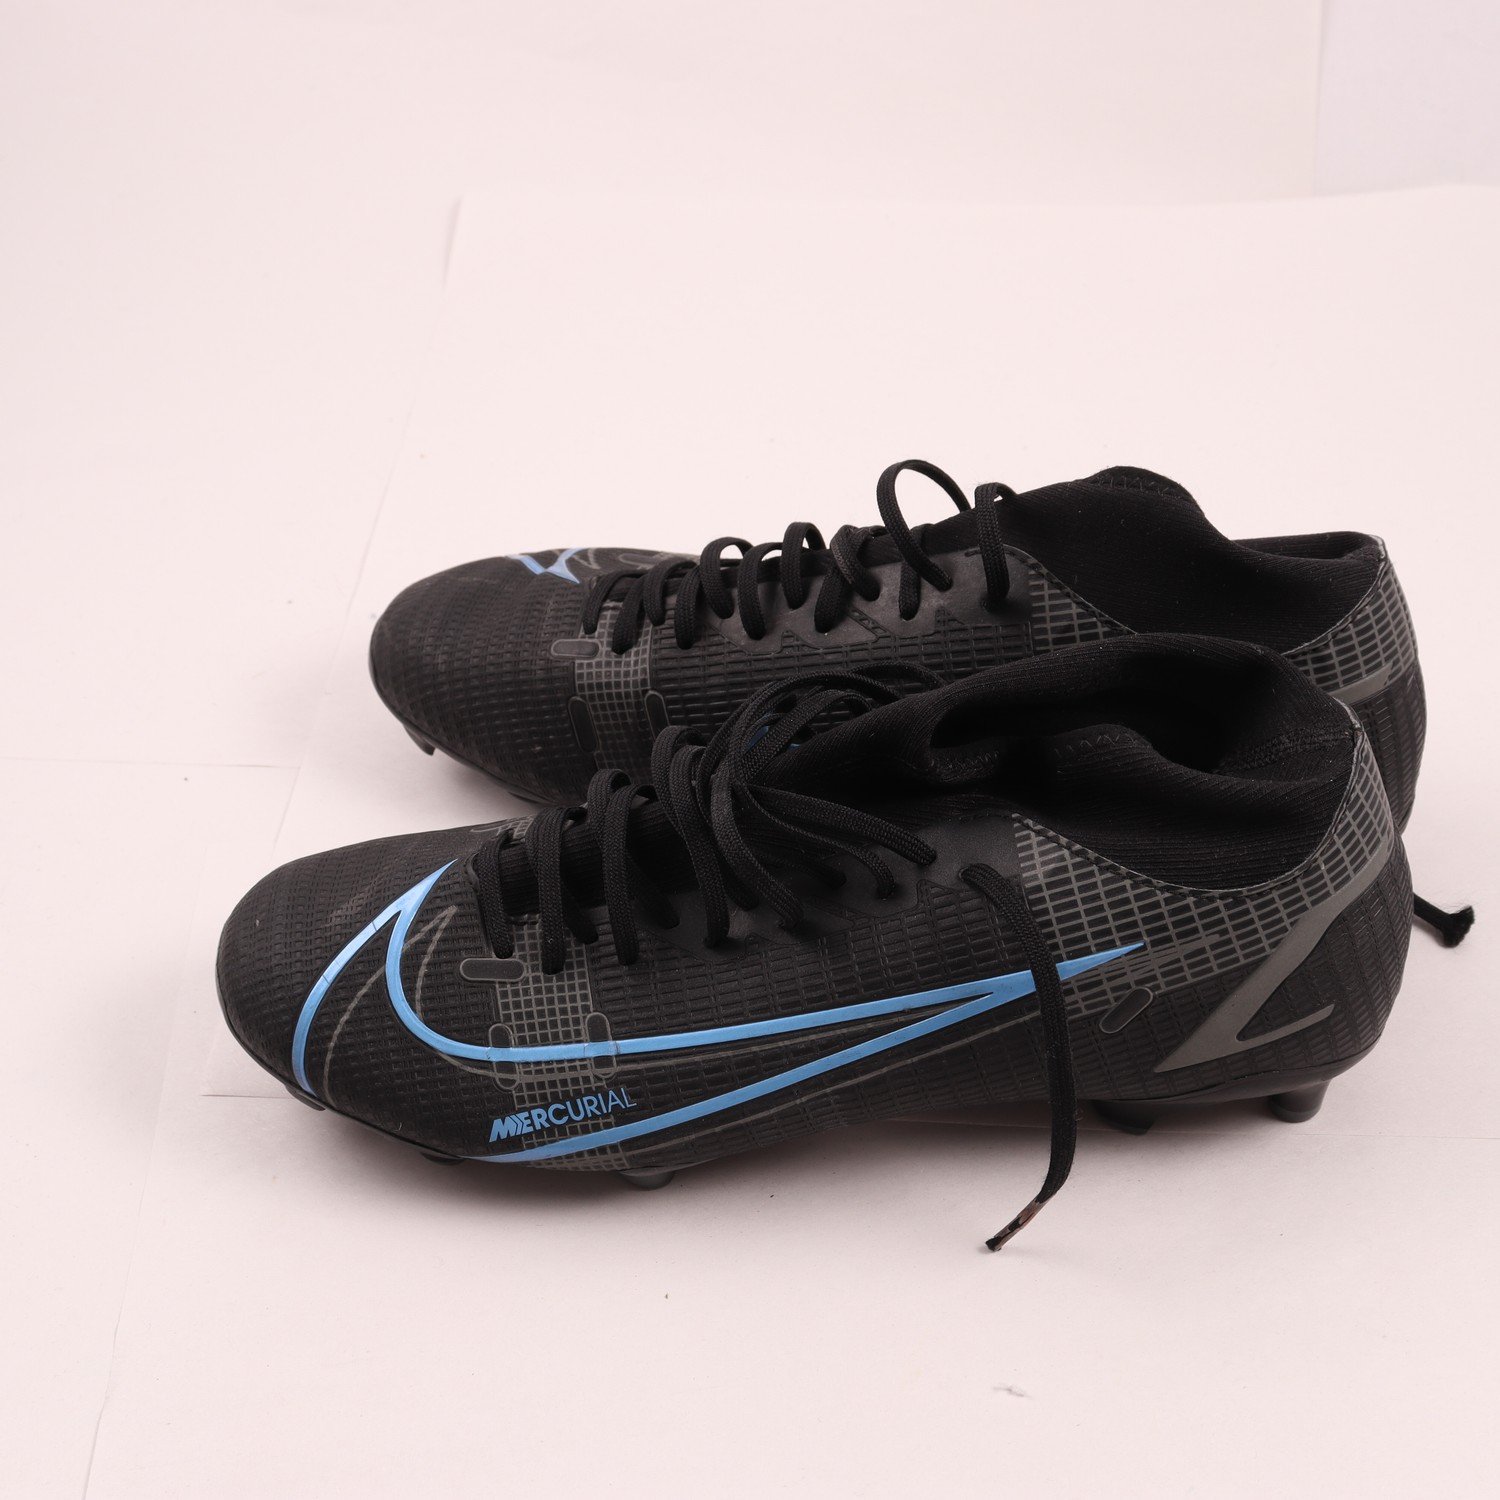 Fotbollsskor, Nike, stl. 42.5